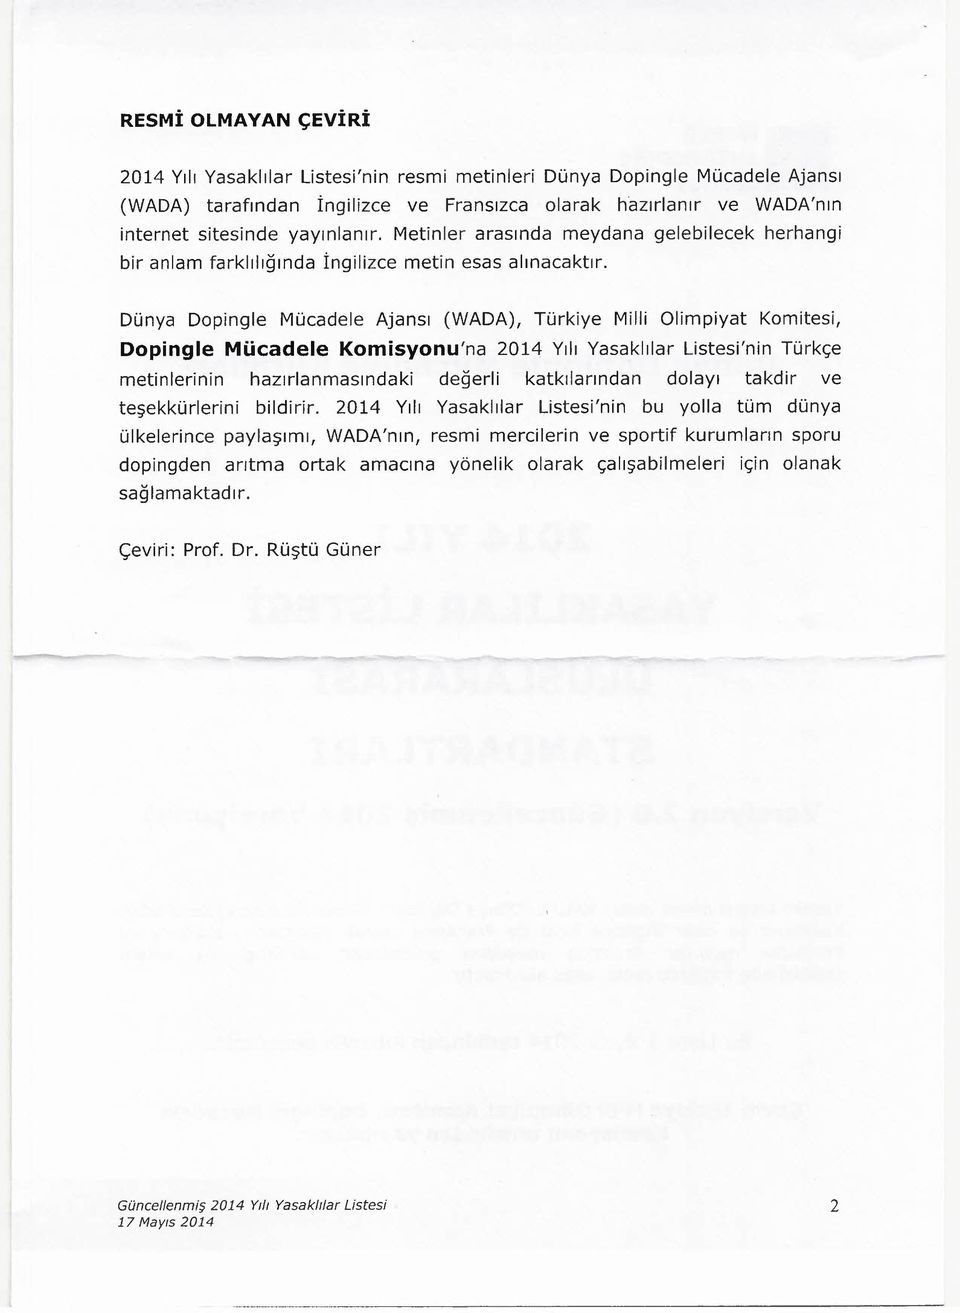 Dünya Dopingle Mücadele Ajansı (WADA), Türkiye Milli Olimpiyat Komitesi, Dopingle Mücadele Komisyonu'na 2014 Yılı Yasaklılar Listesi'nin Türkçe metinlerinin hazırlanmasındaki değerli katkılarından